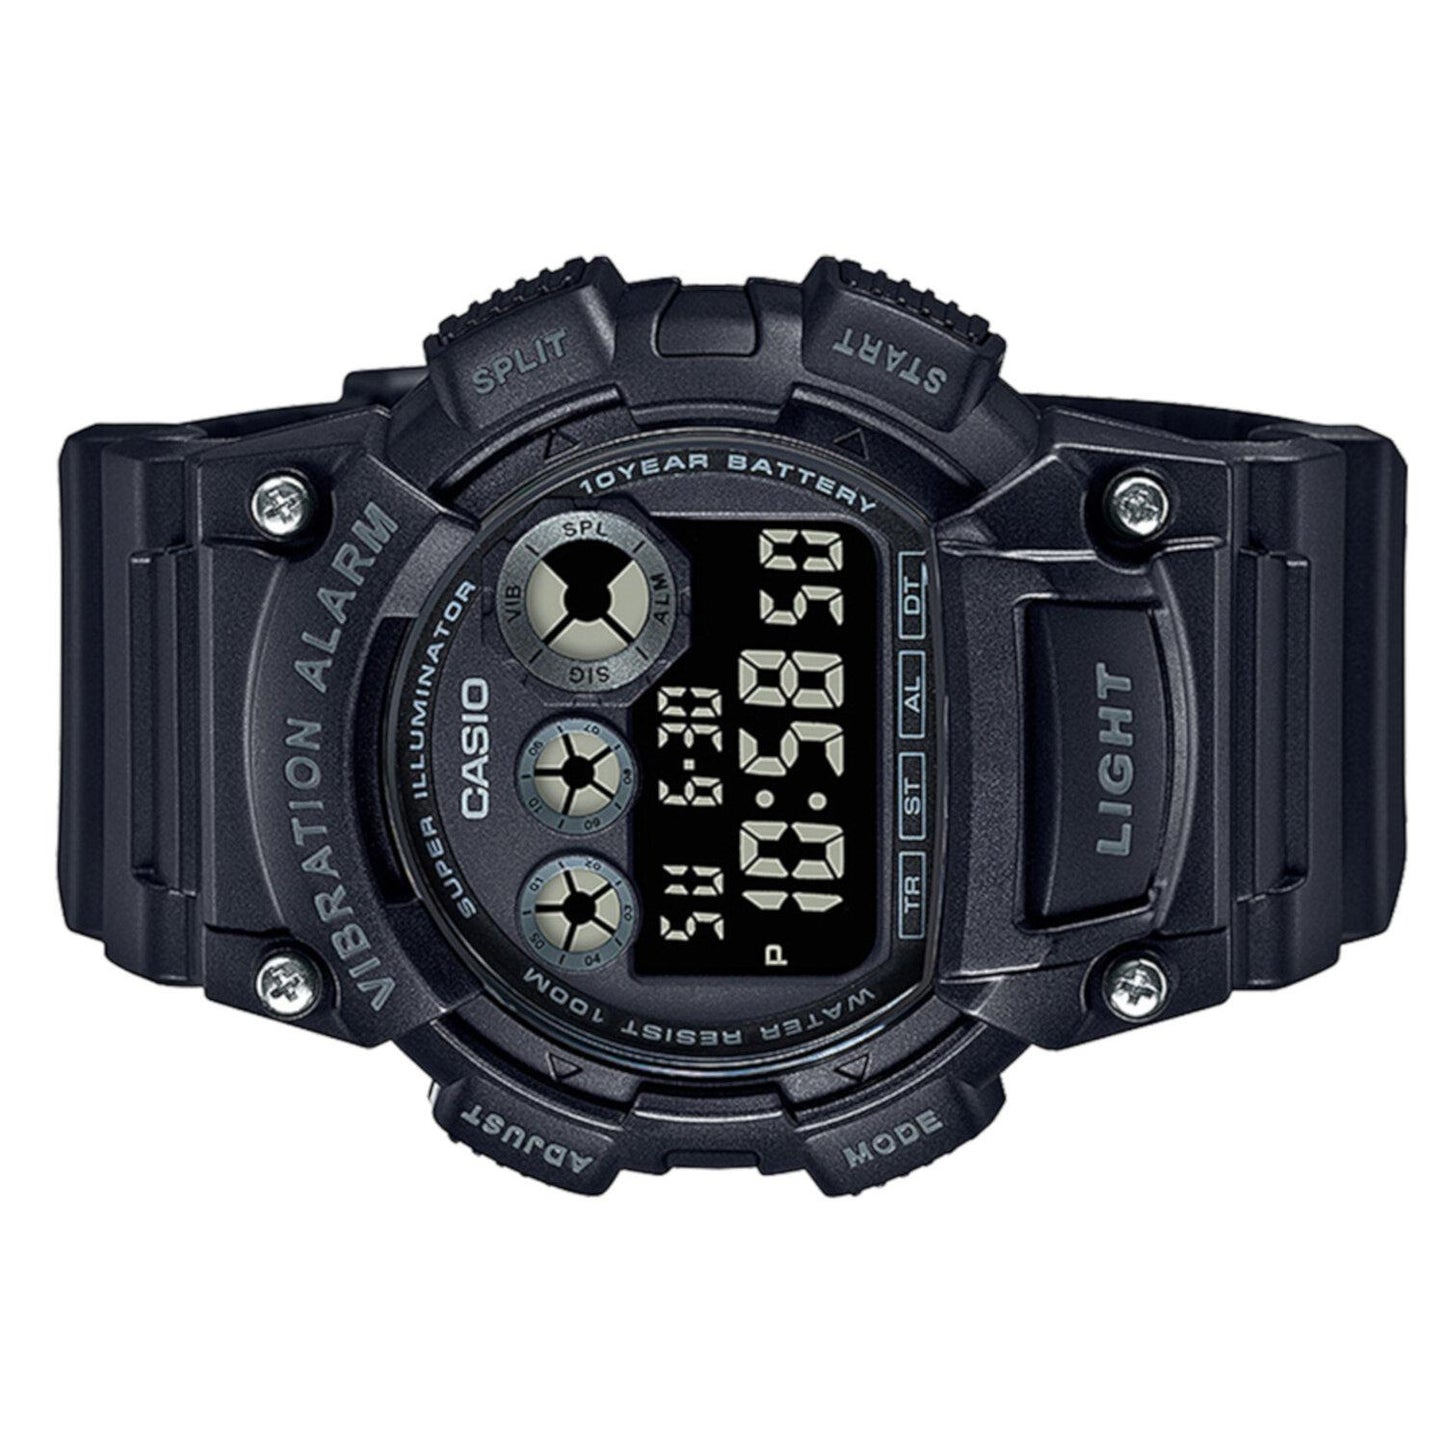 Reloj Casio W-735H-1BVCF 10 Year Battery Alerta Vibratoria-Negro